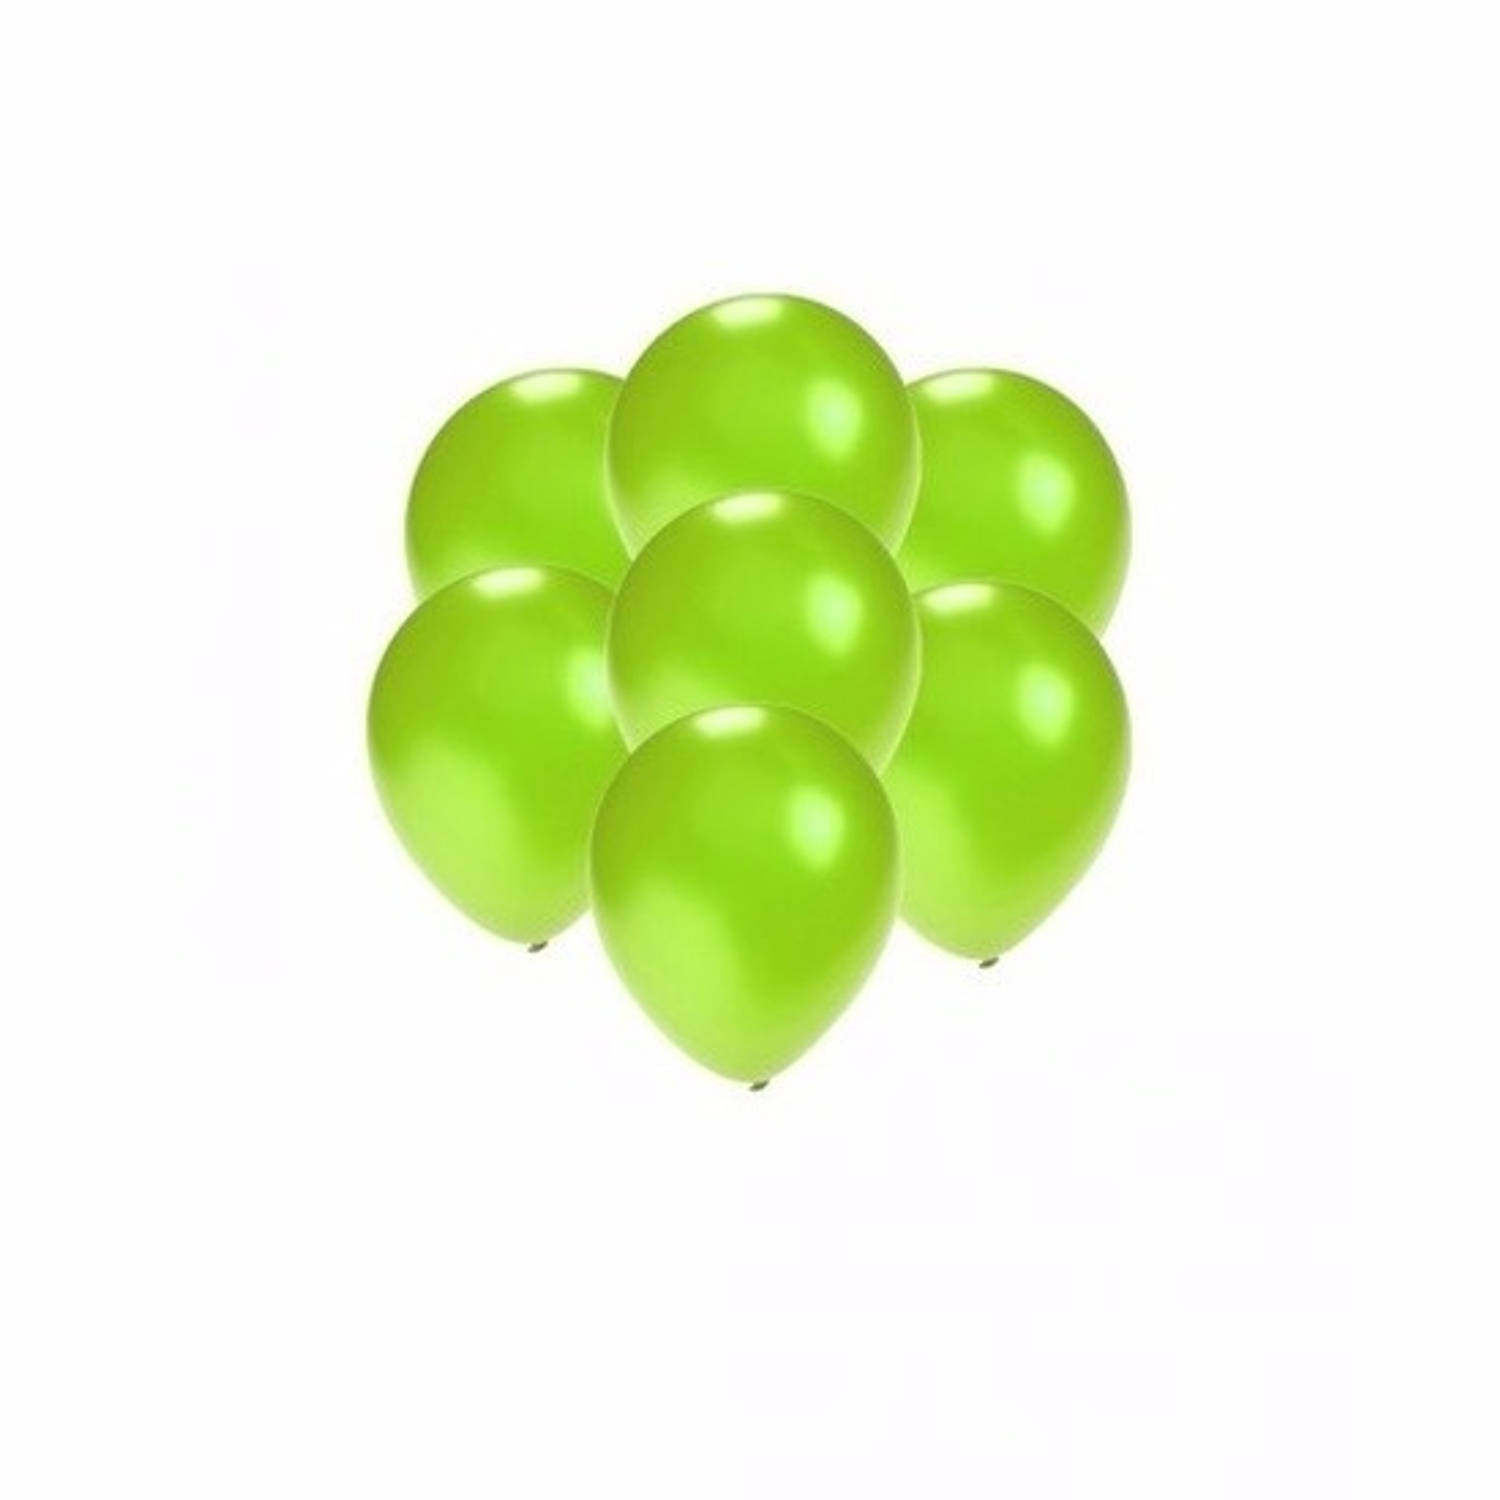 100x Mini ballonnen groen metallic - Ballonnen